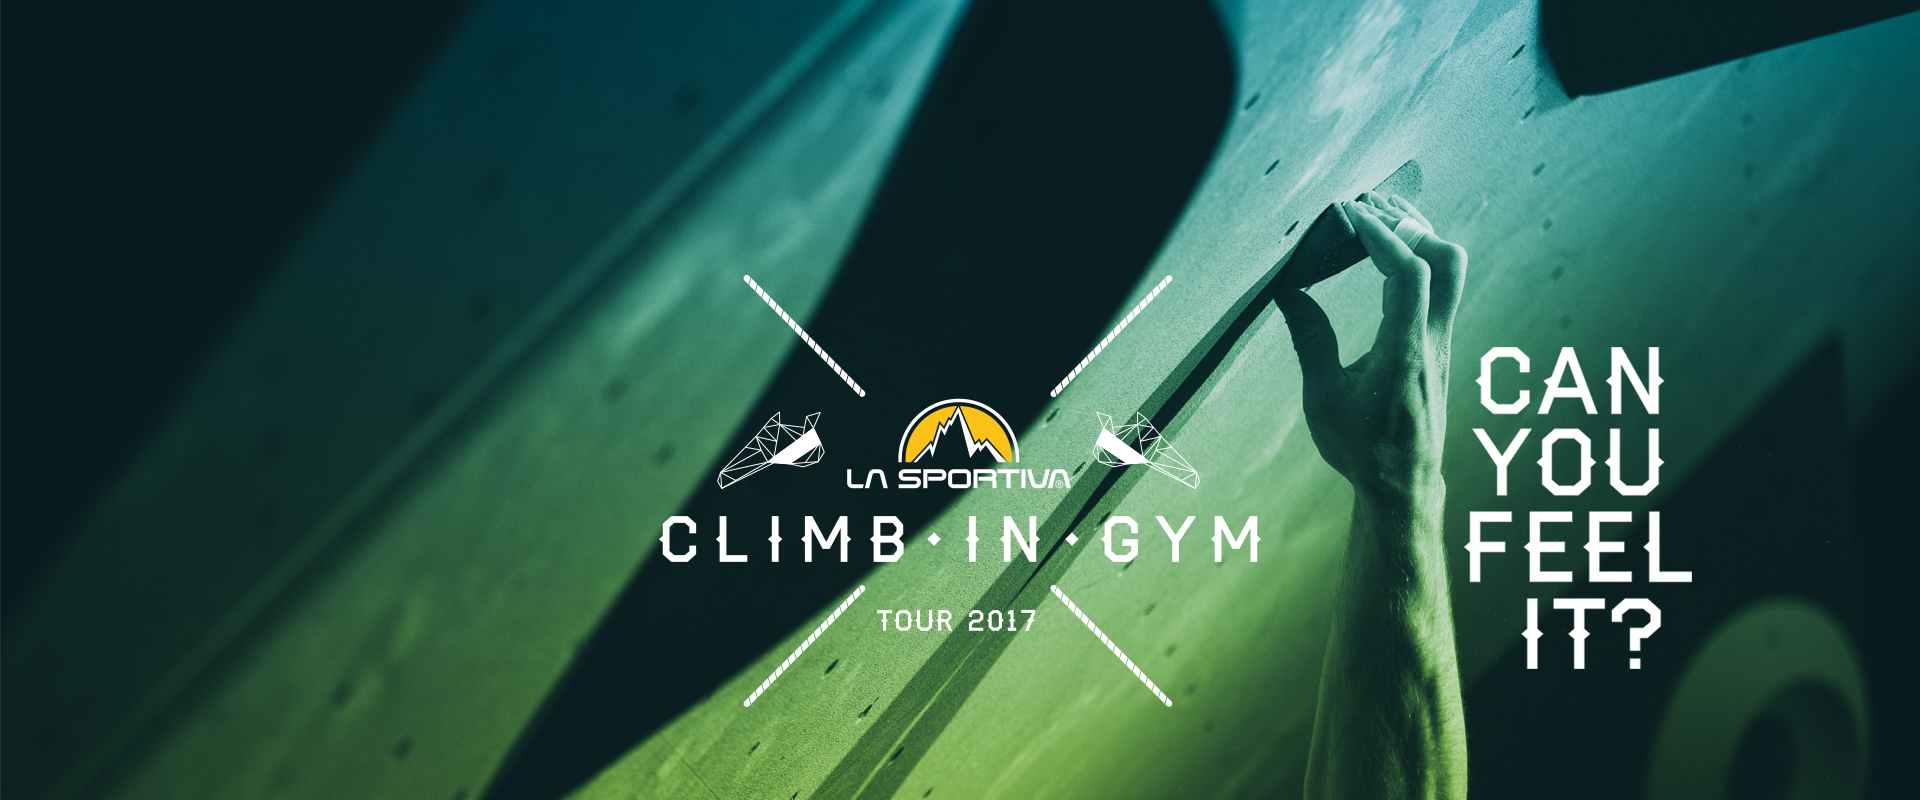 slider climb in gym